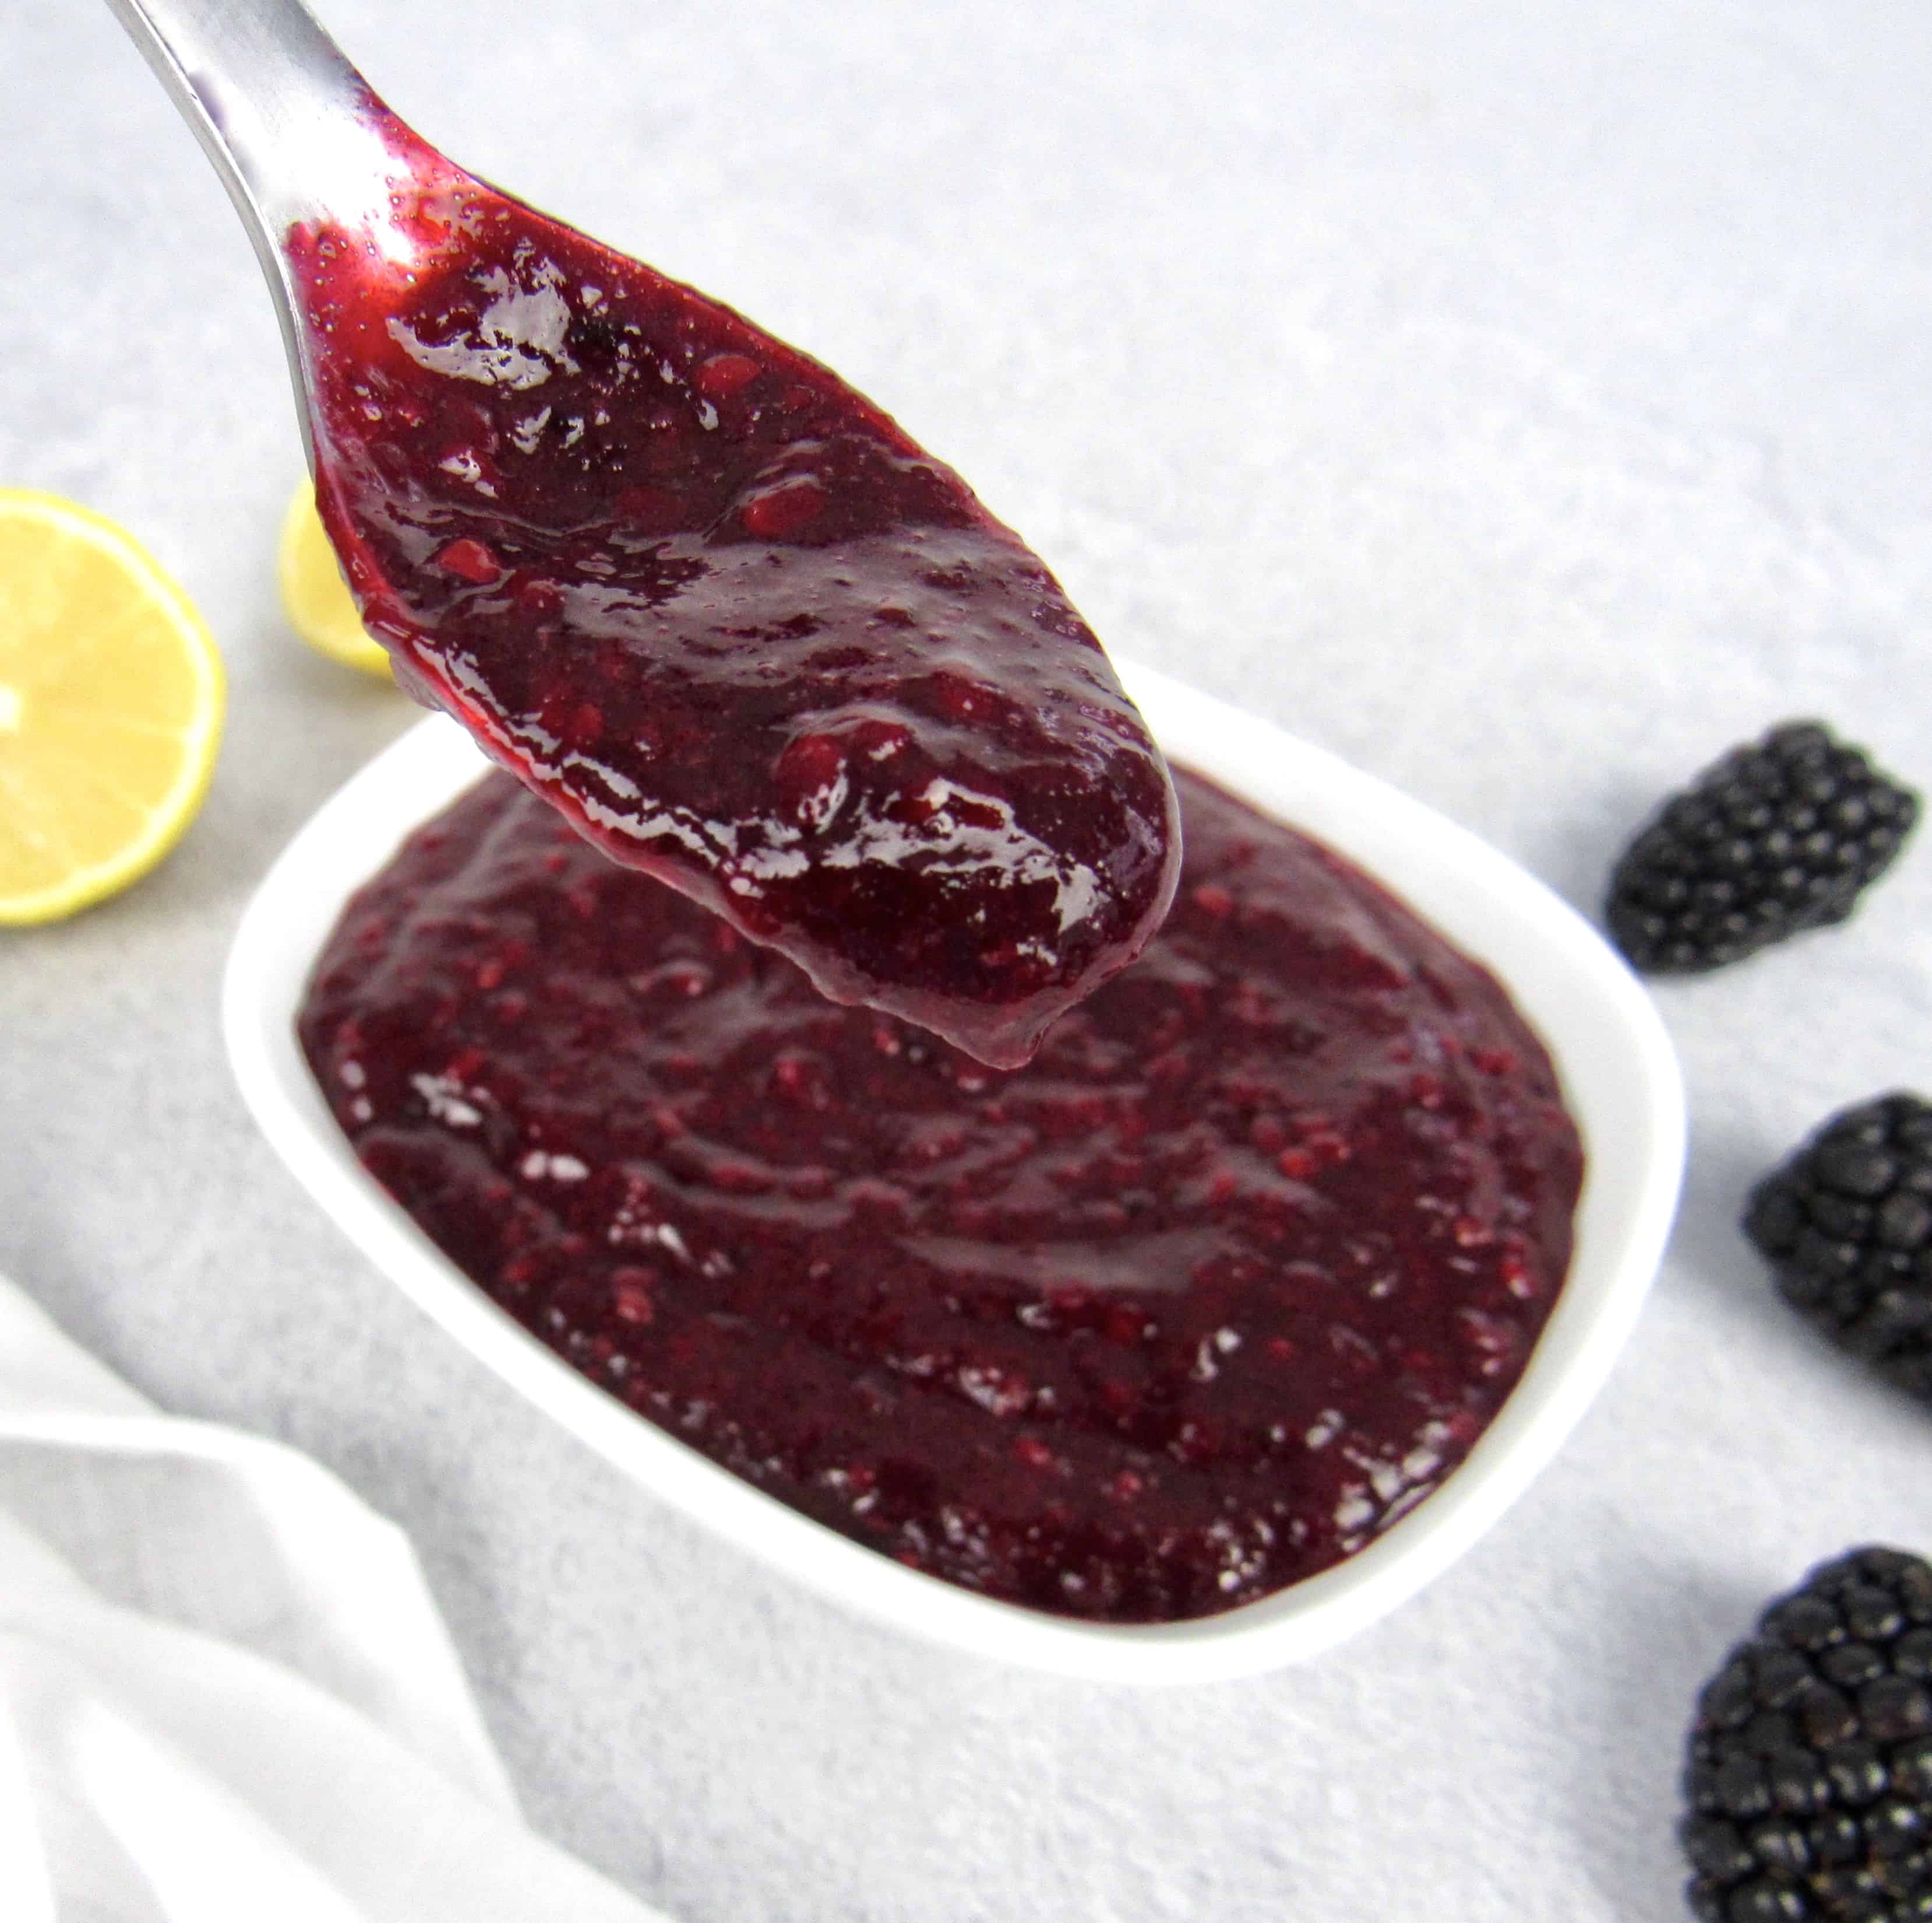 blackberry jam in spoon being held up